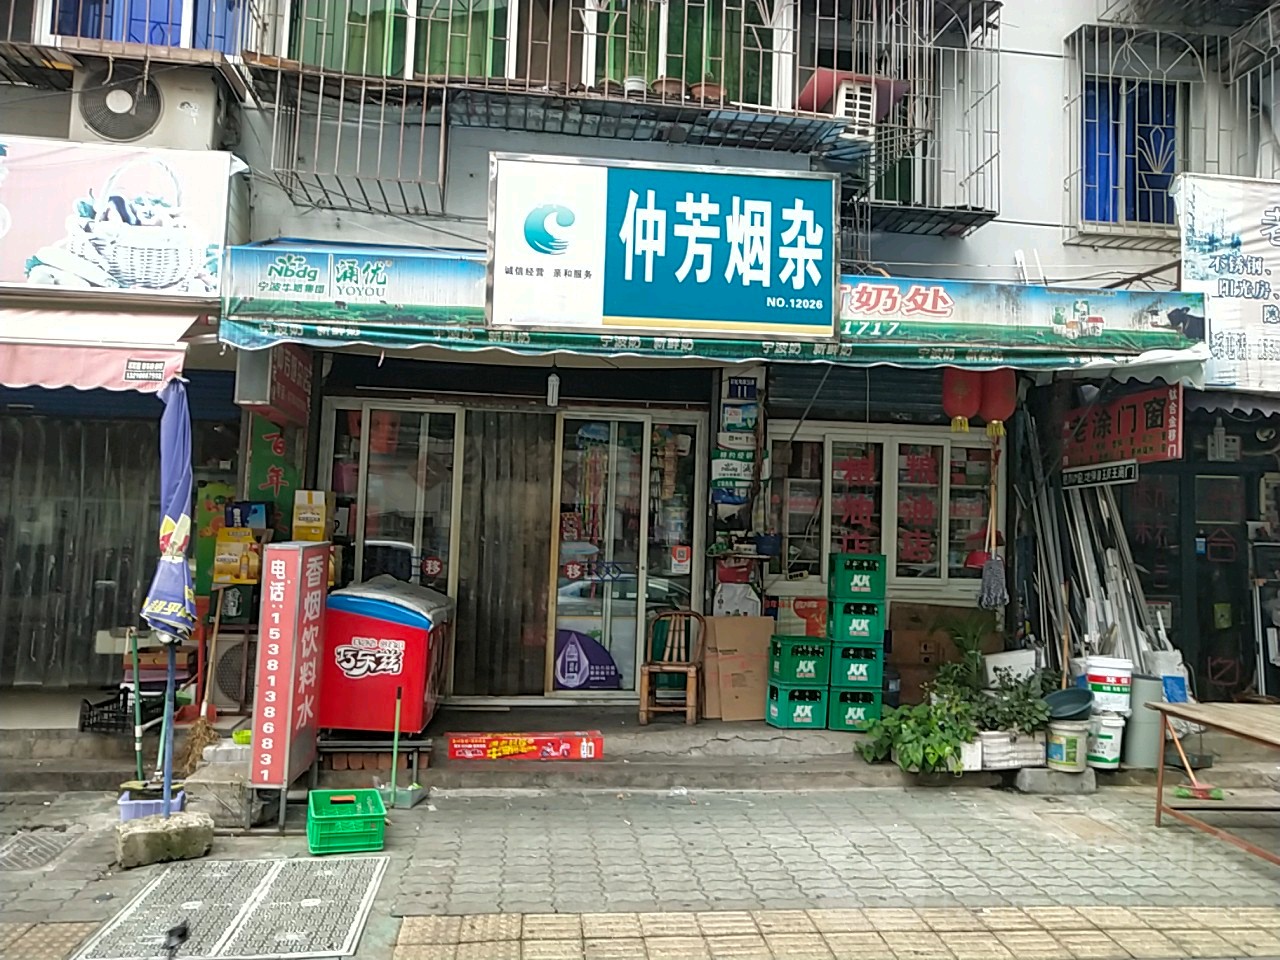 仲芳煙雜(彩虹南路店)